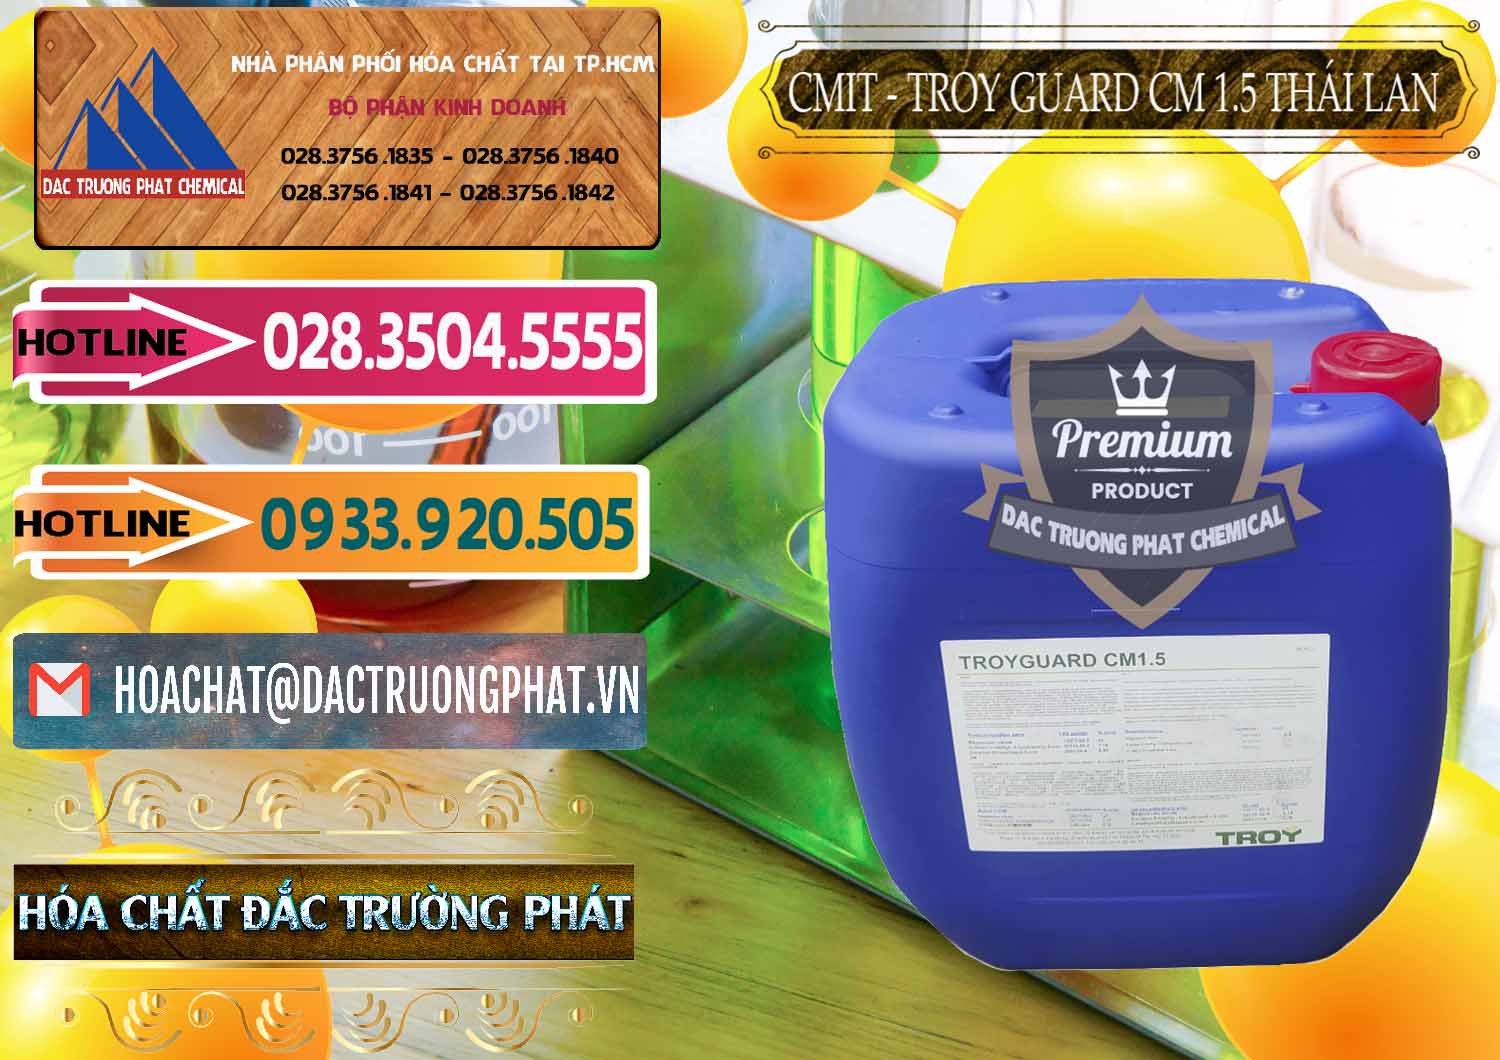 Nơi bán & cung ứng Chất Bảo Quản CMIT Thái Lan Thailand - 0326 - Cty bán và phân phối hóa chất tại TP.HCM - dactruongphat.vn